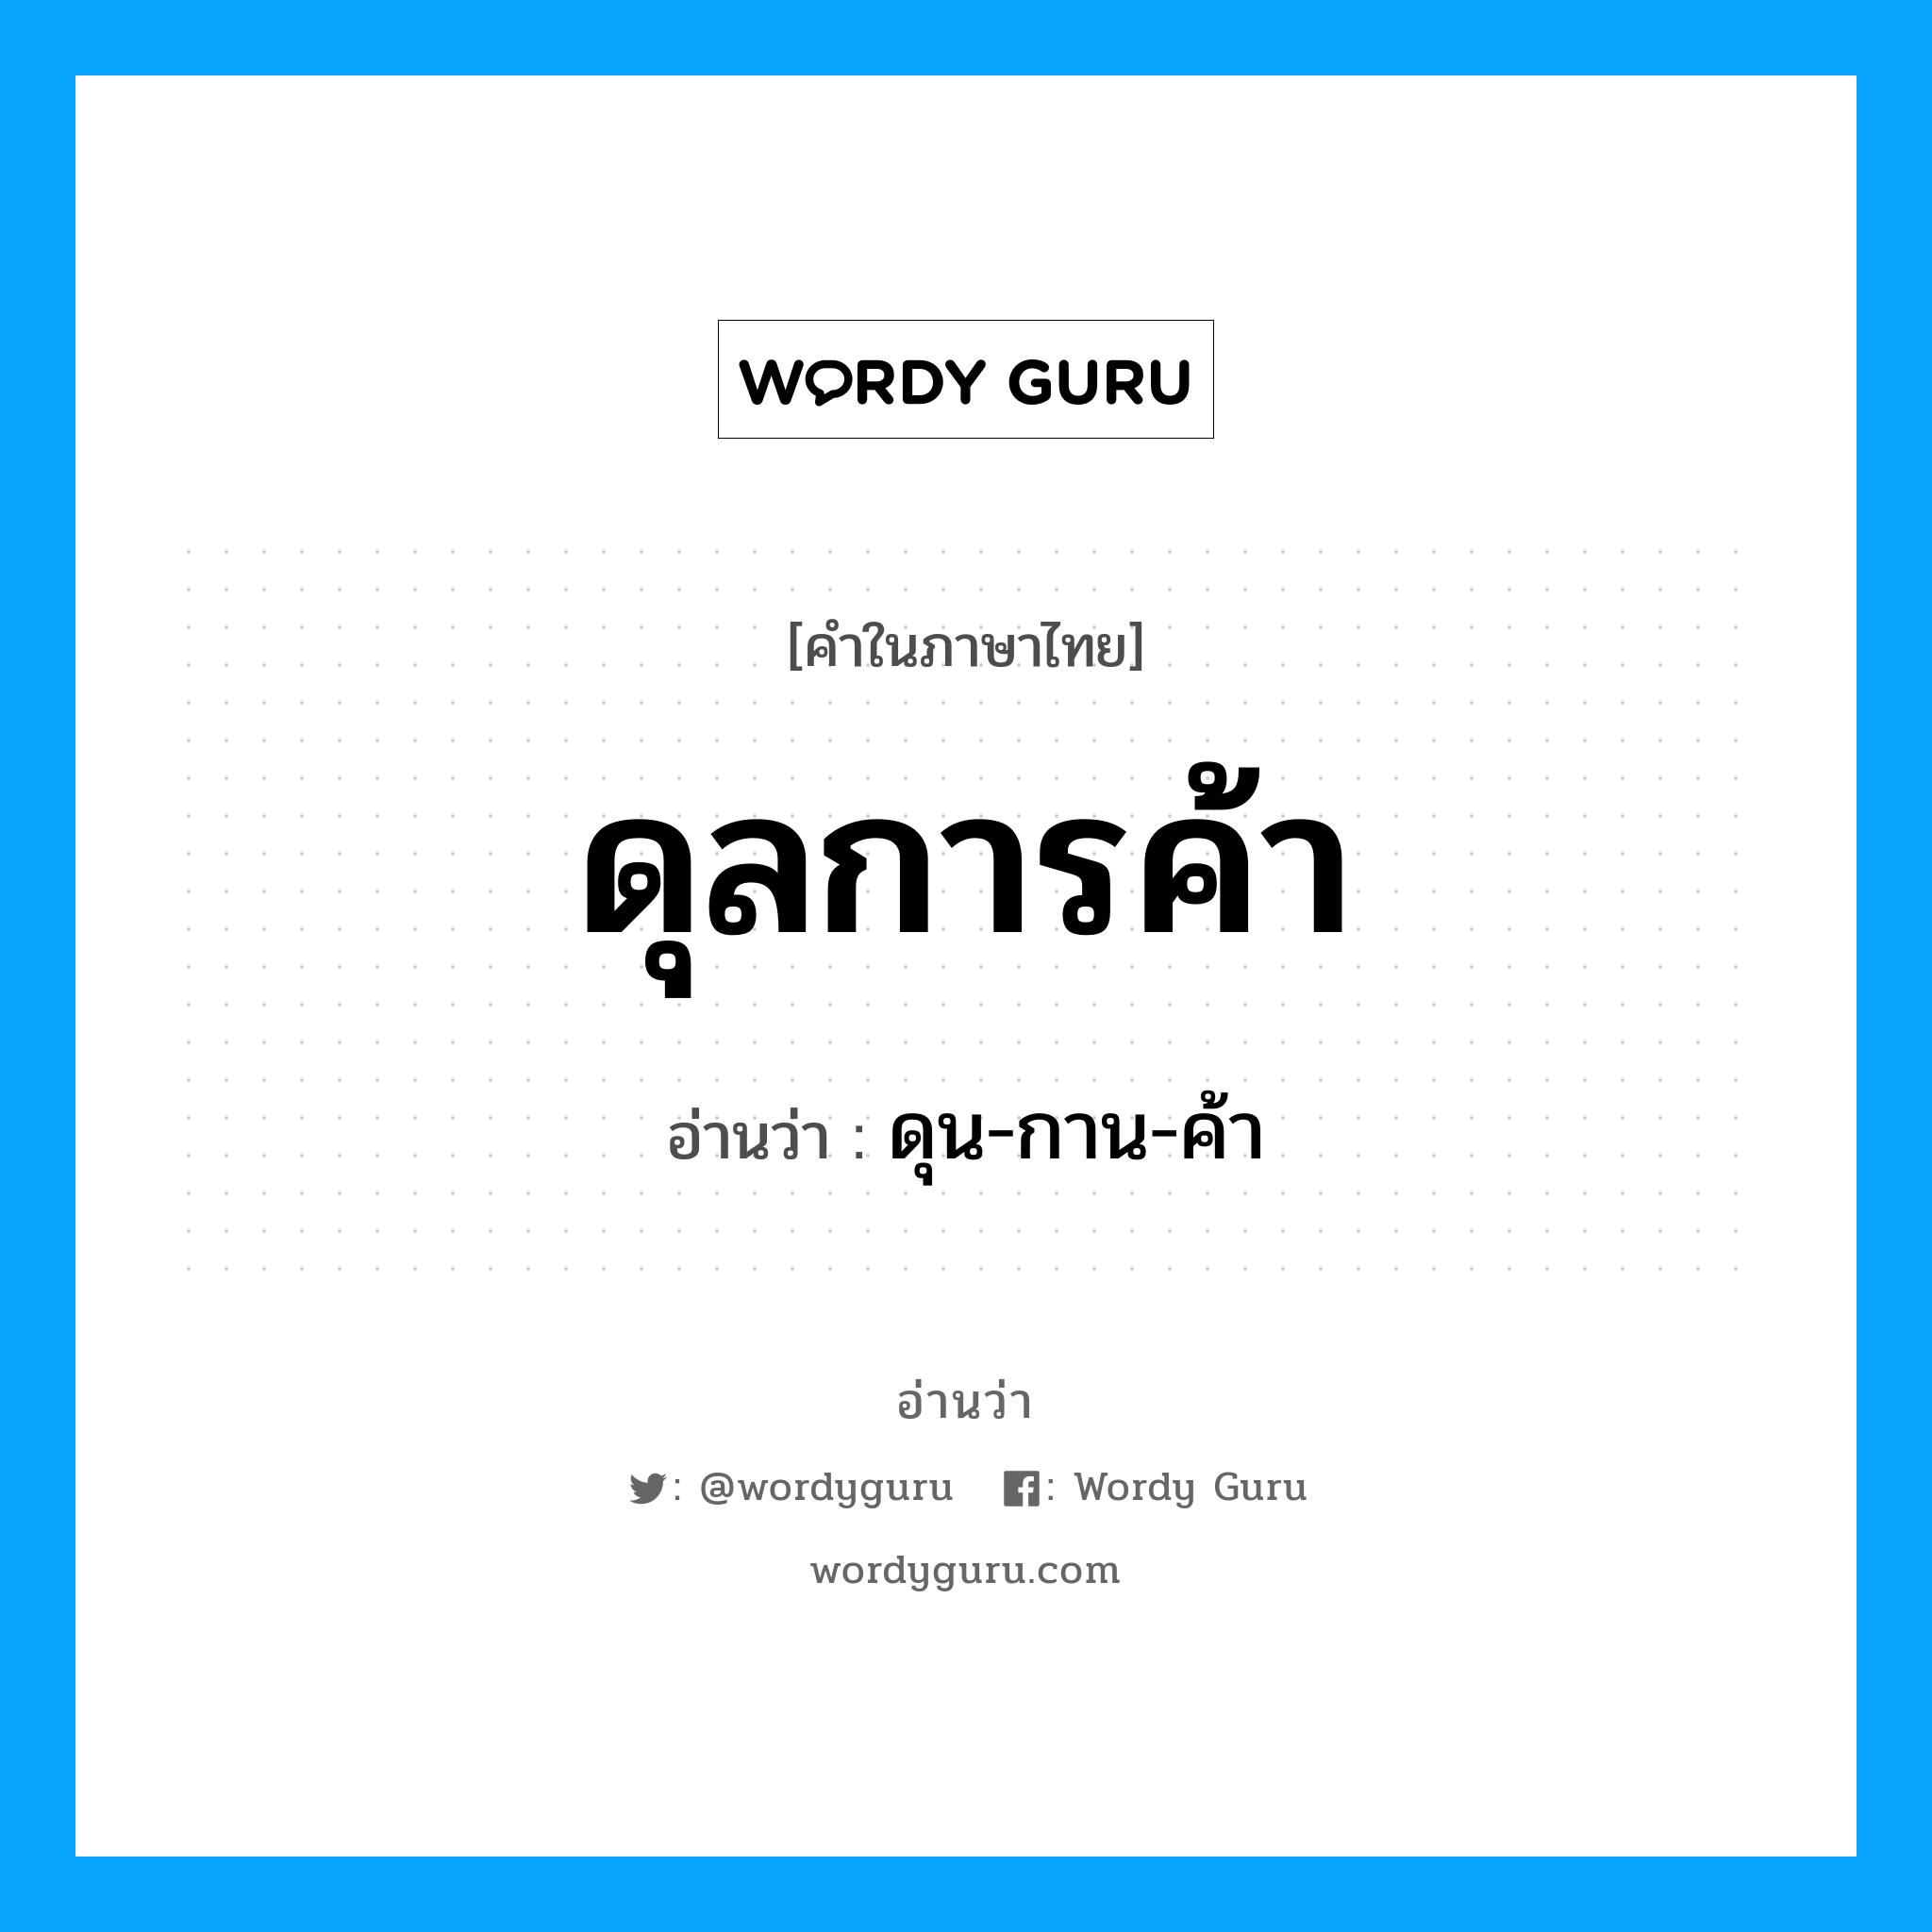 ดุน-กาน-ค้า เป็นคำอ่านของคำไหน?, คำในภาษาไทย ดุน-กาน-ค้า อ่านว่า ดุลการค้า